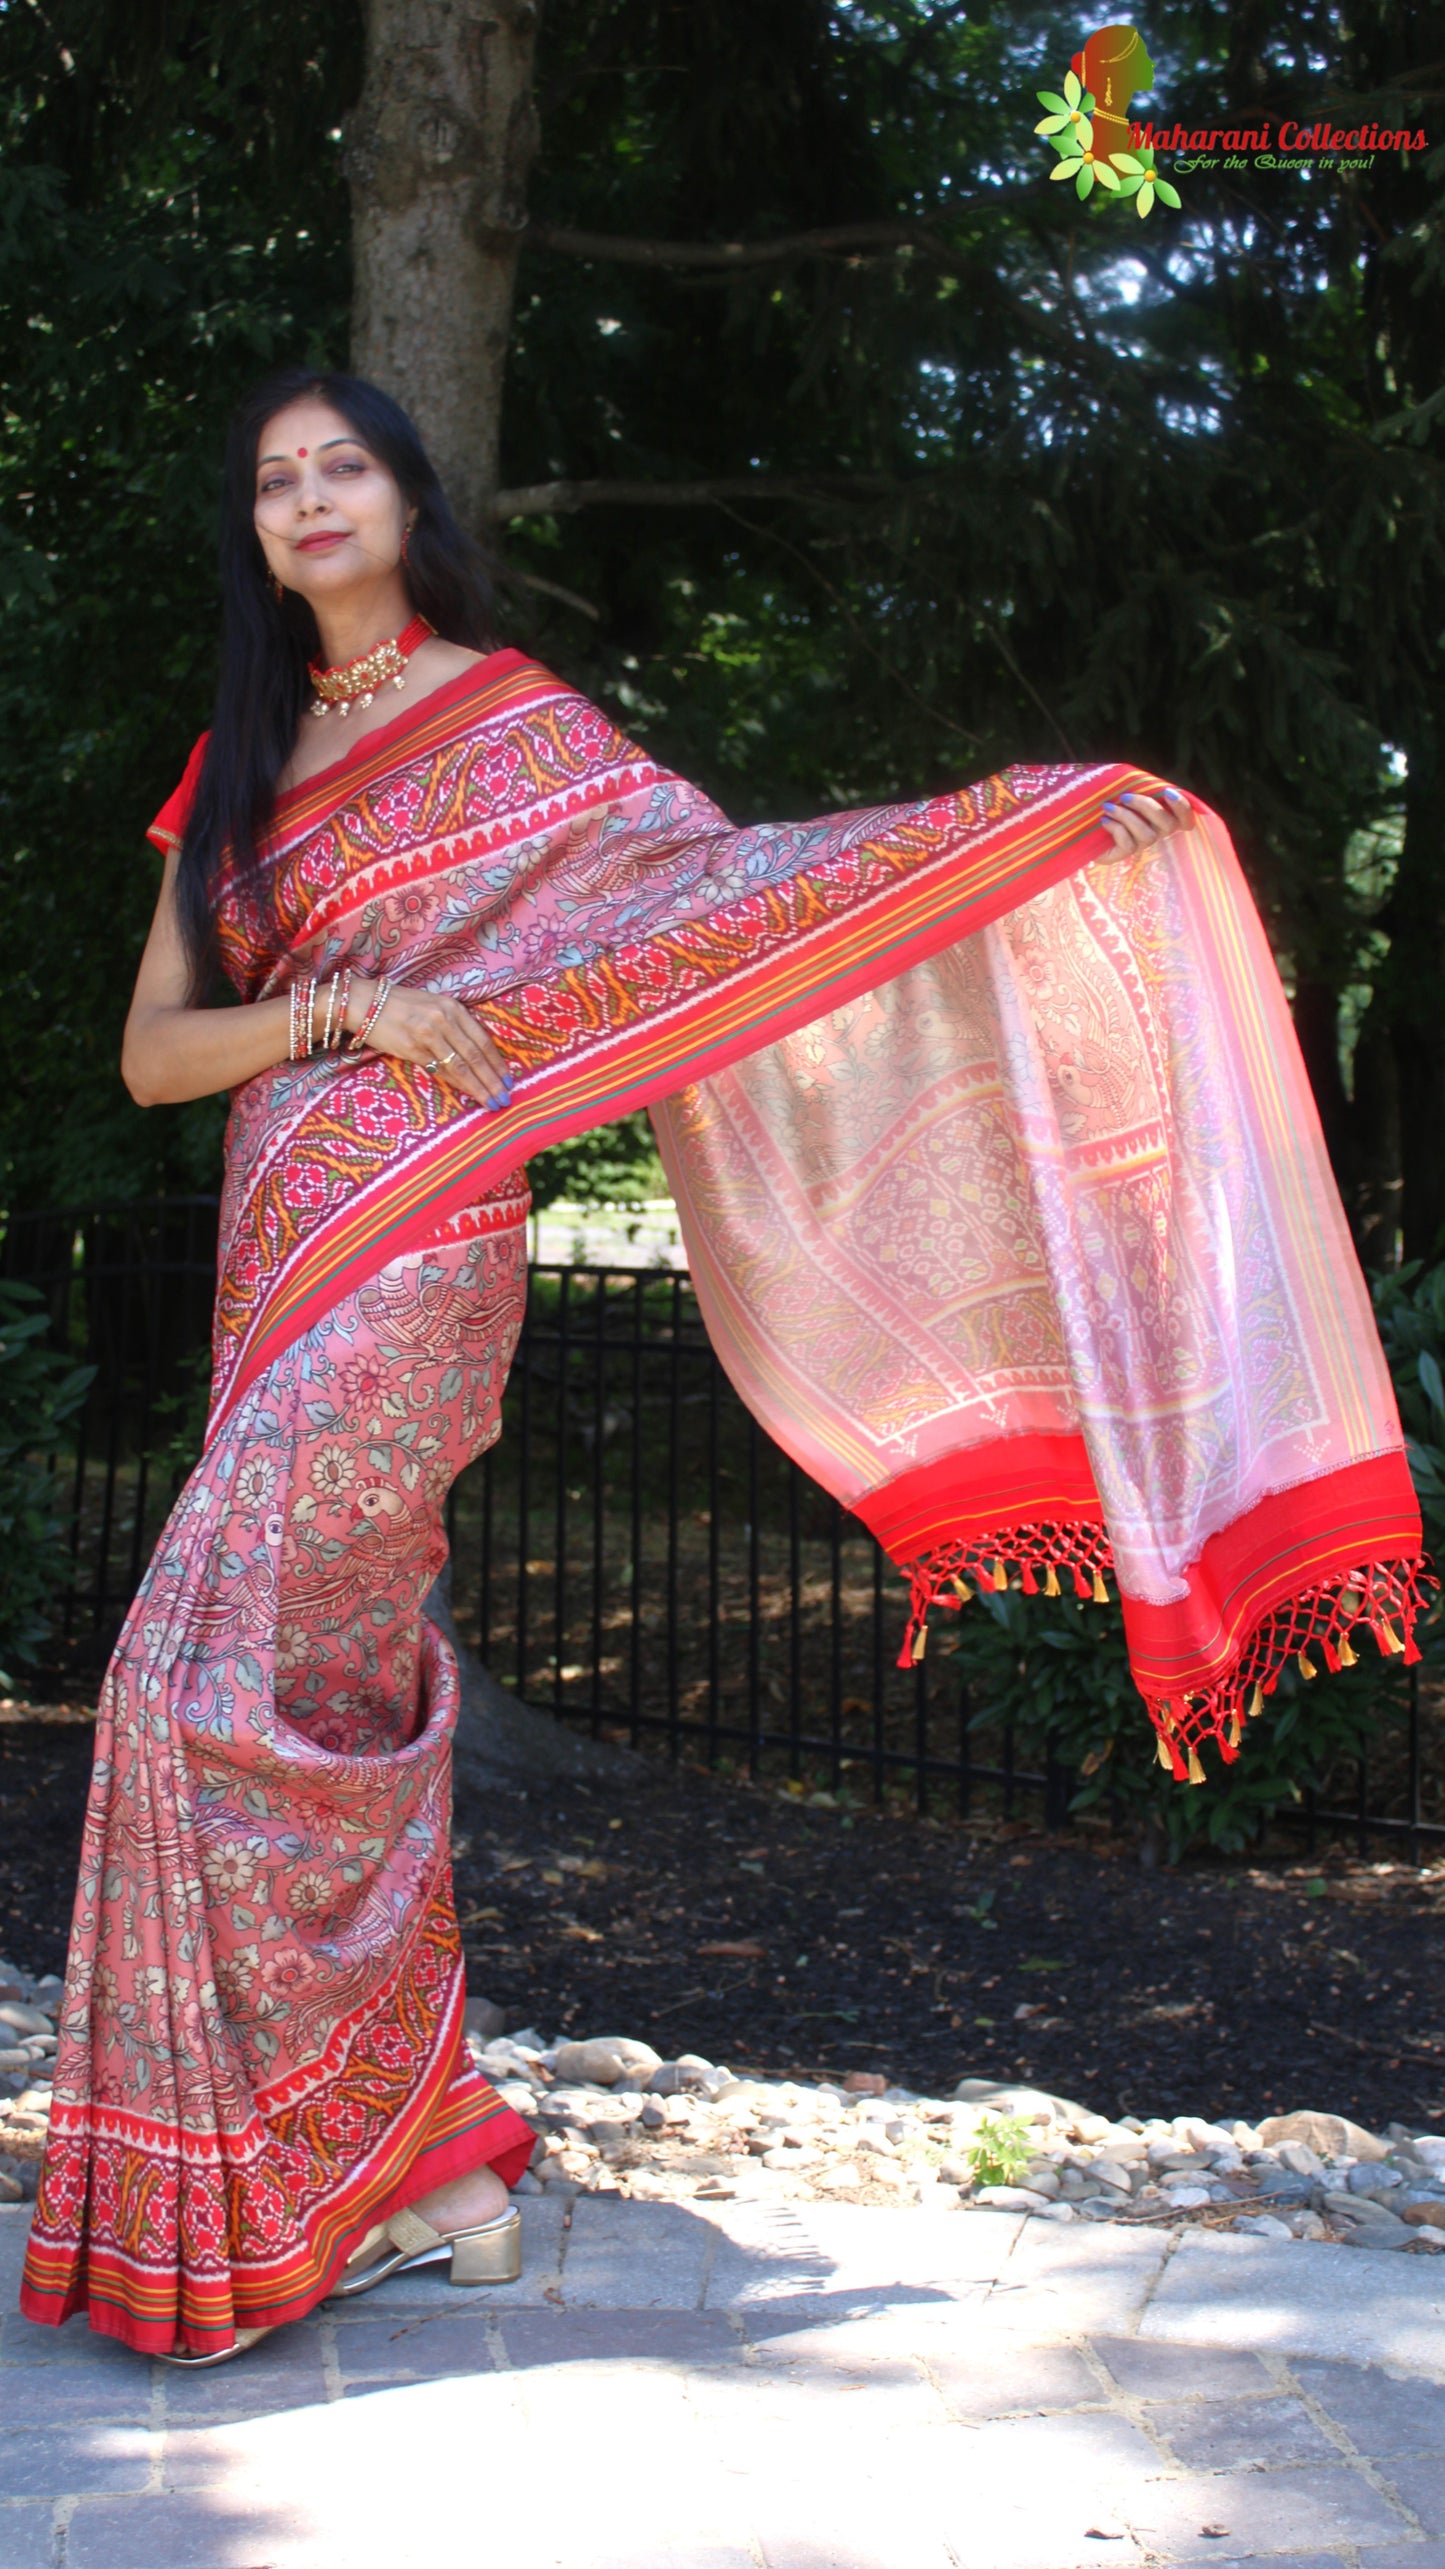 Maharani's Pure Banarasi Silk Saree - Bronze Orange (with stitched Blouse and Petticoat)